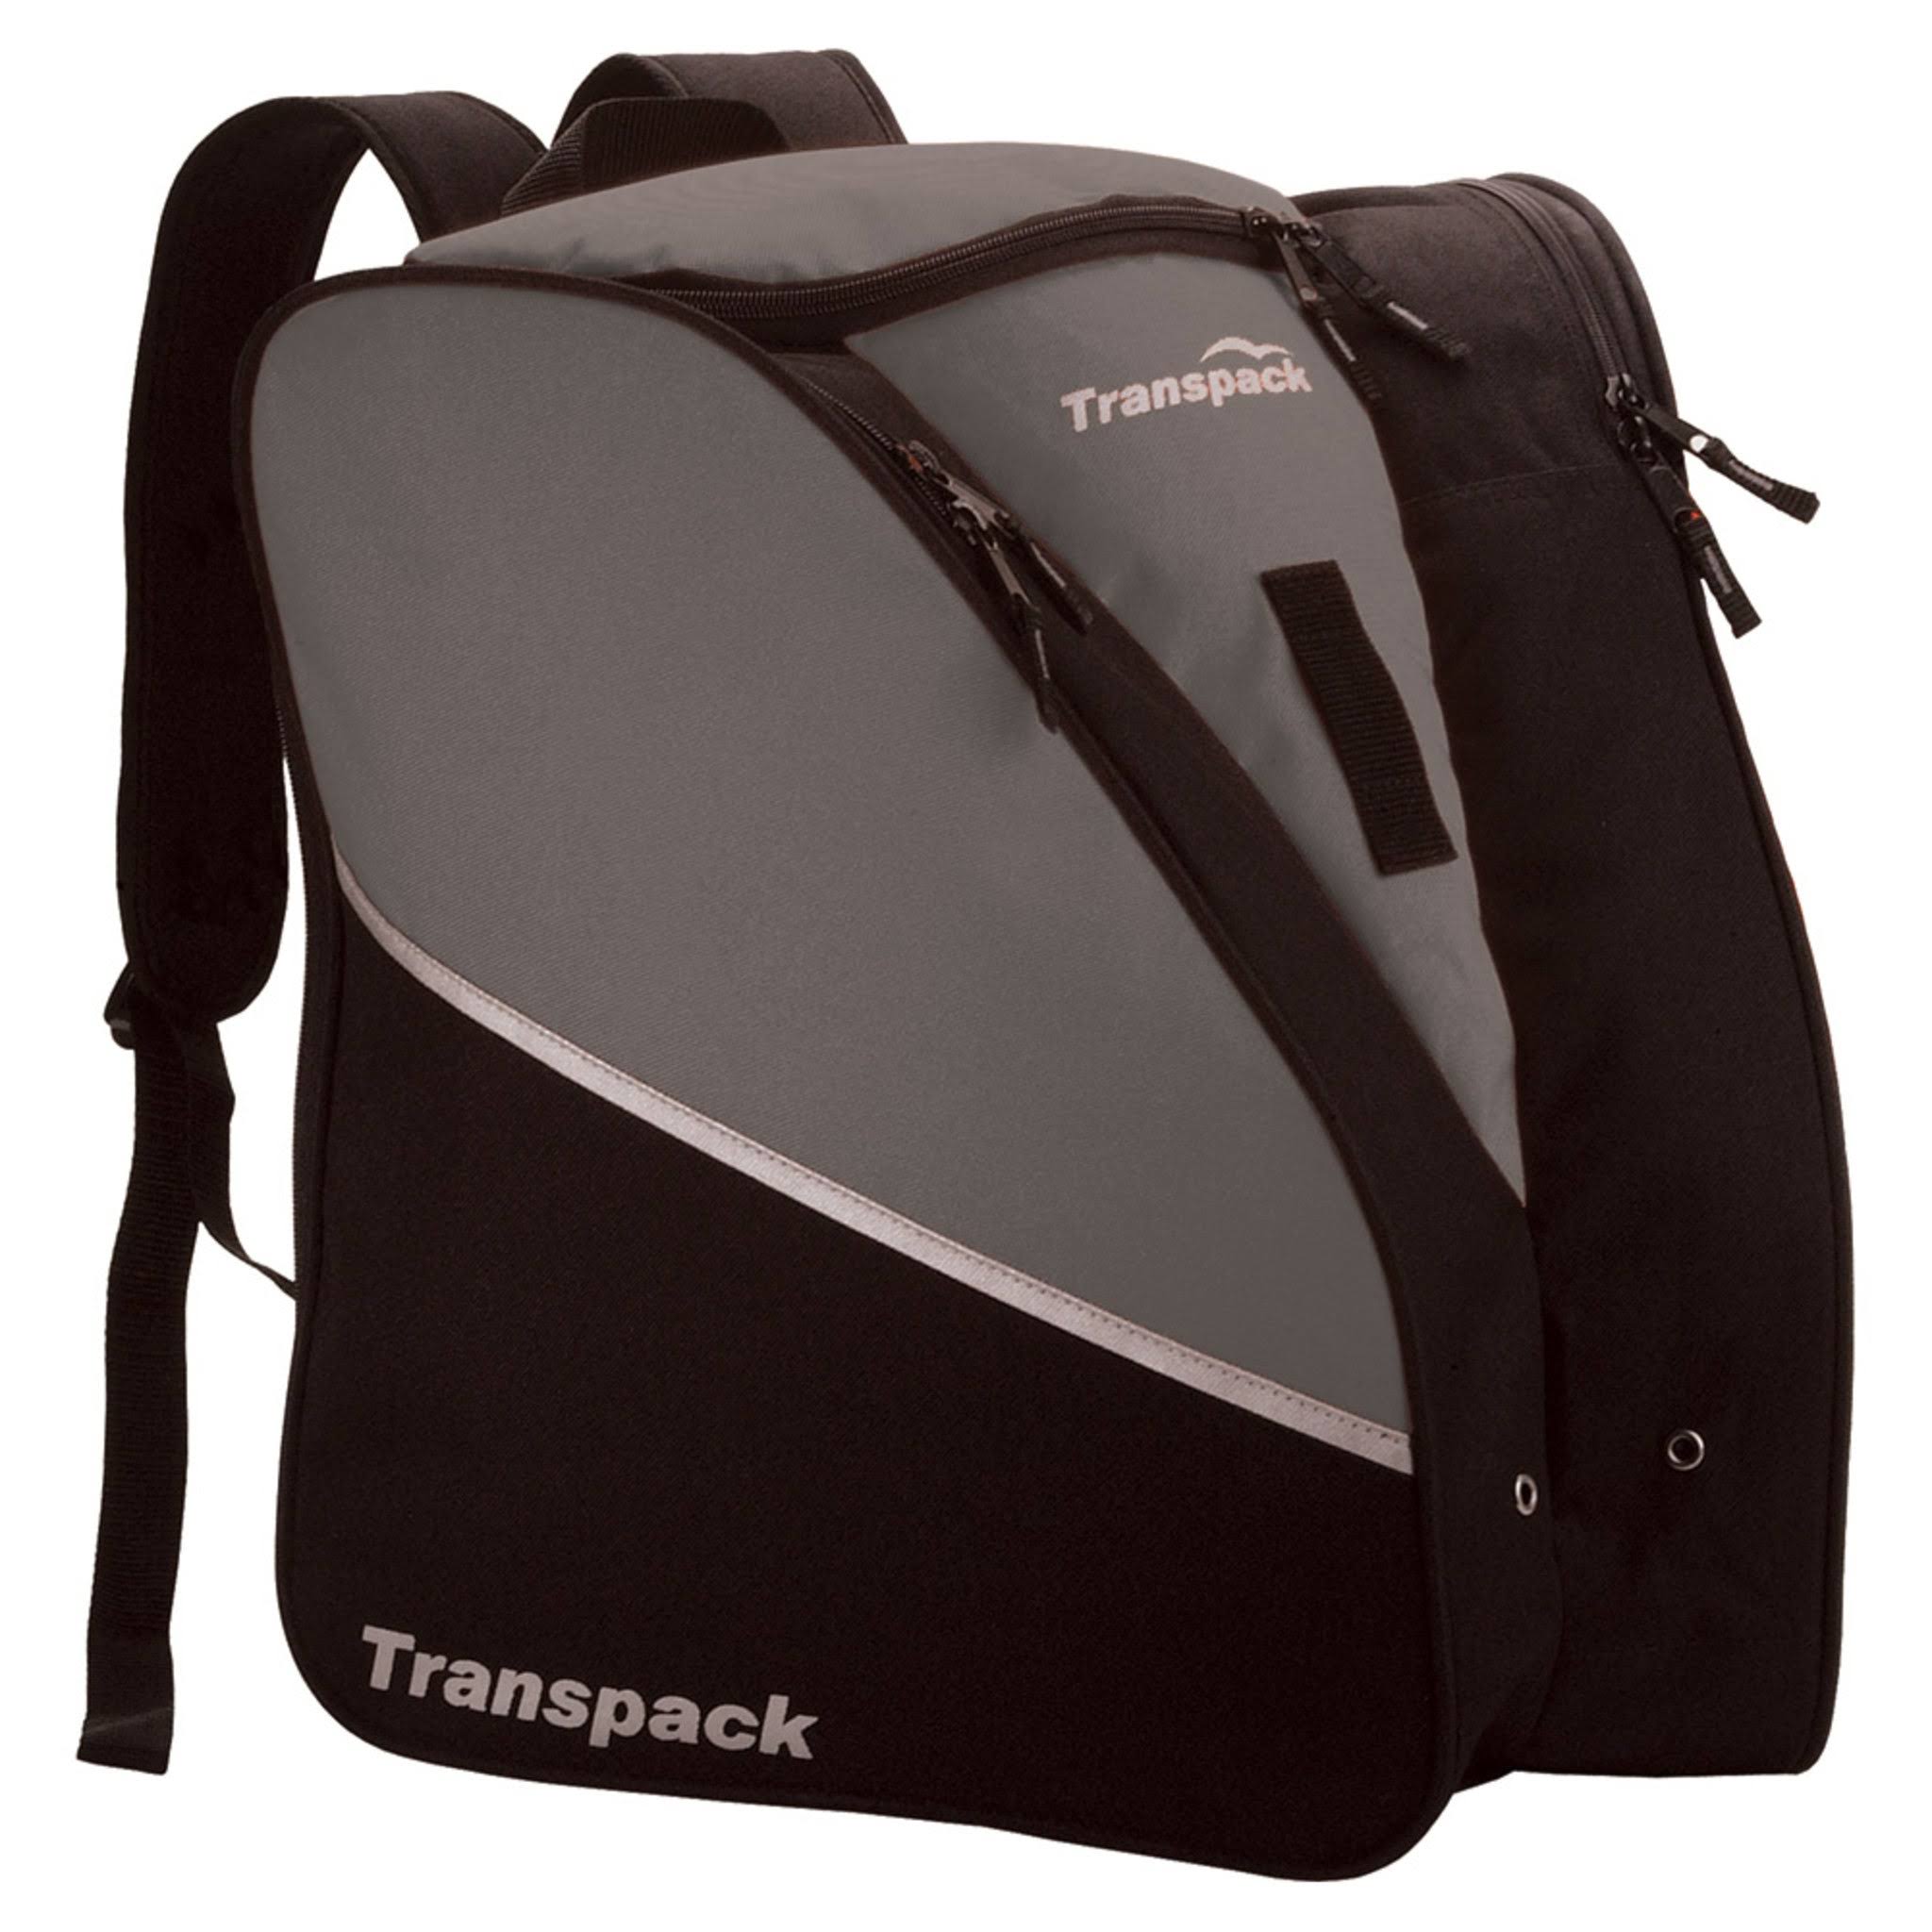 Transpack Edge Jr. Boot Bag - Teal